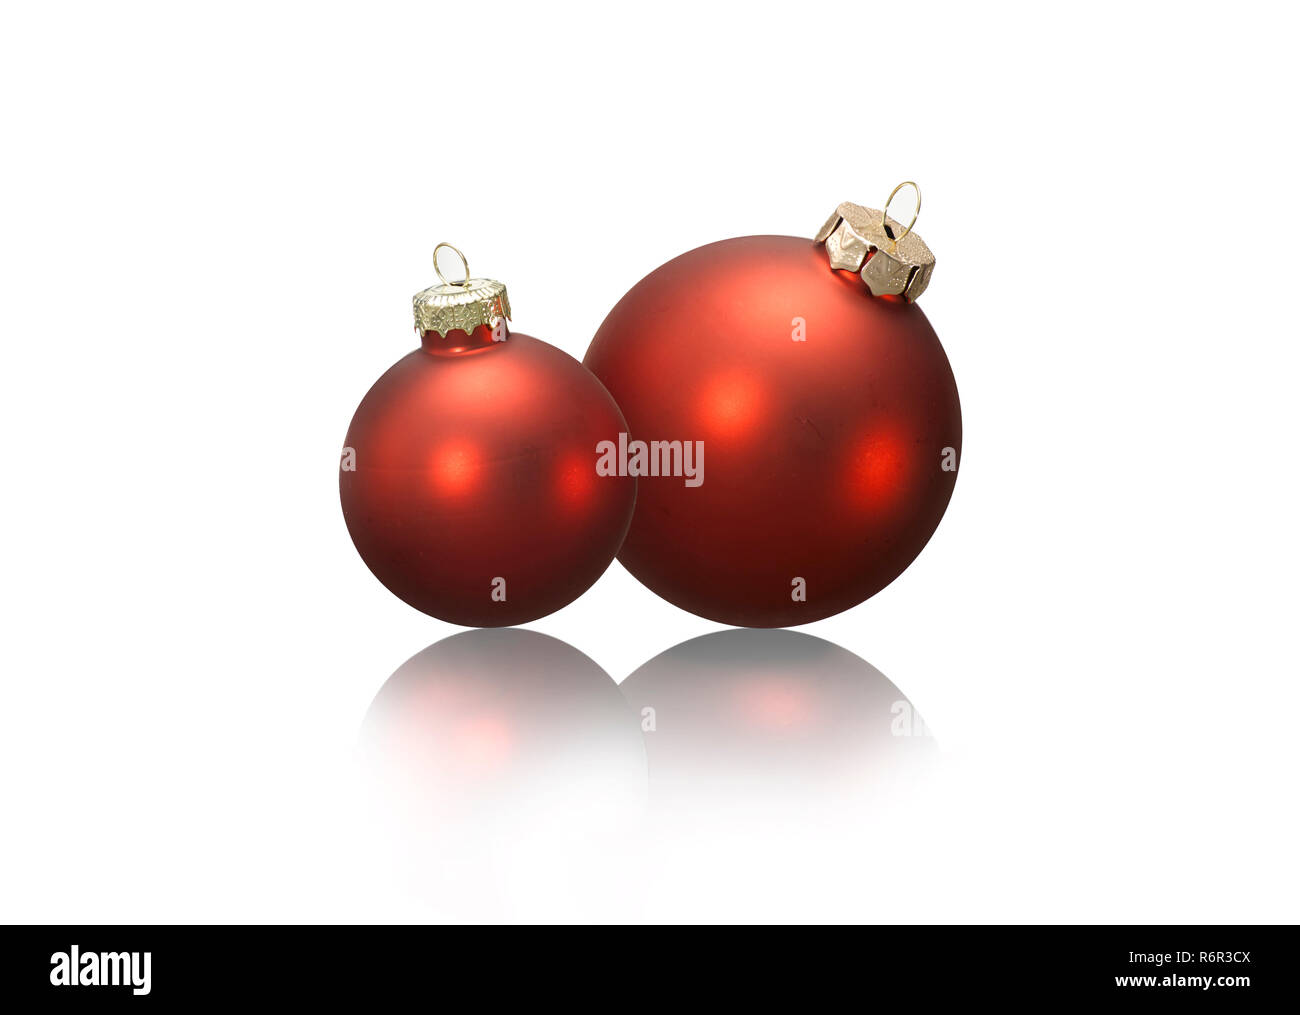 Zwei rote Weihnachtskugeln auf wei§em Grund mit Spegelung. Stock Photo